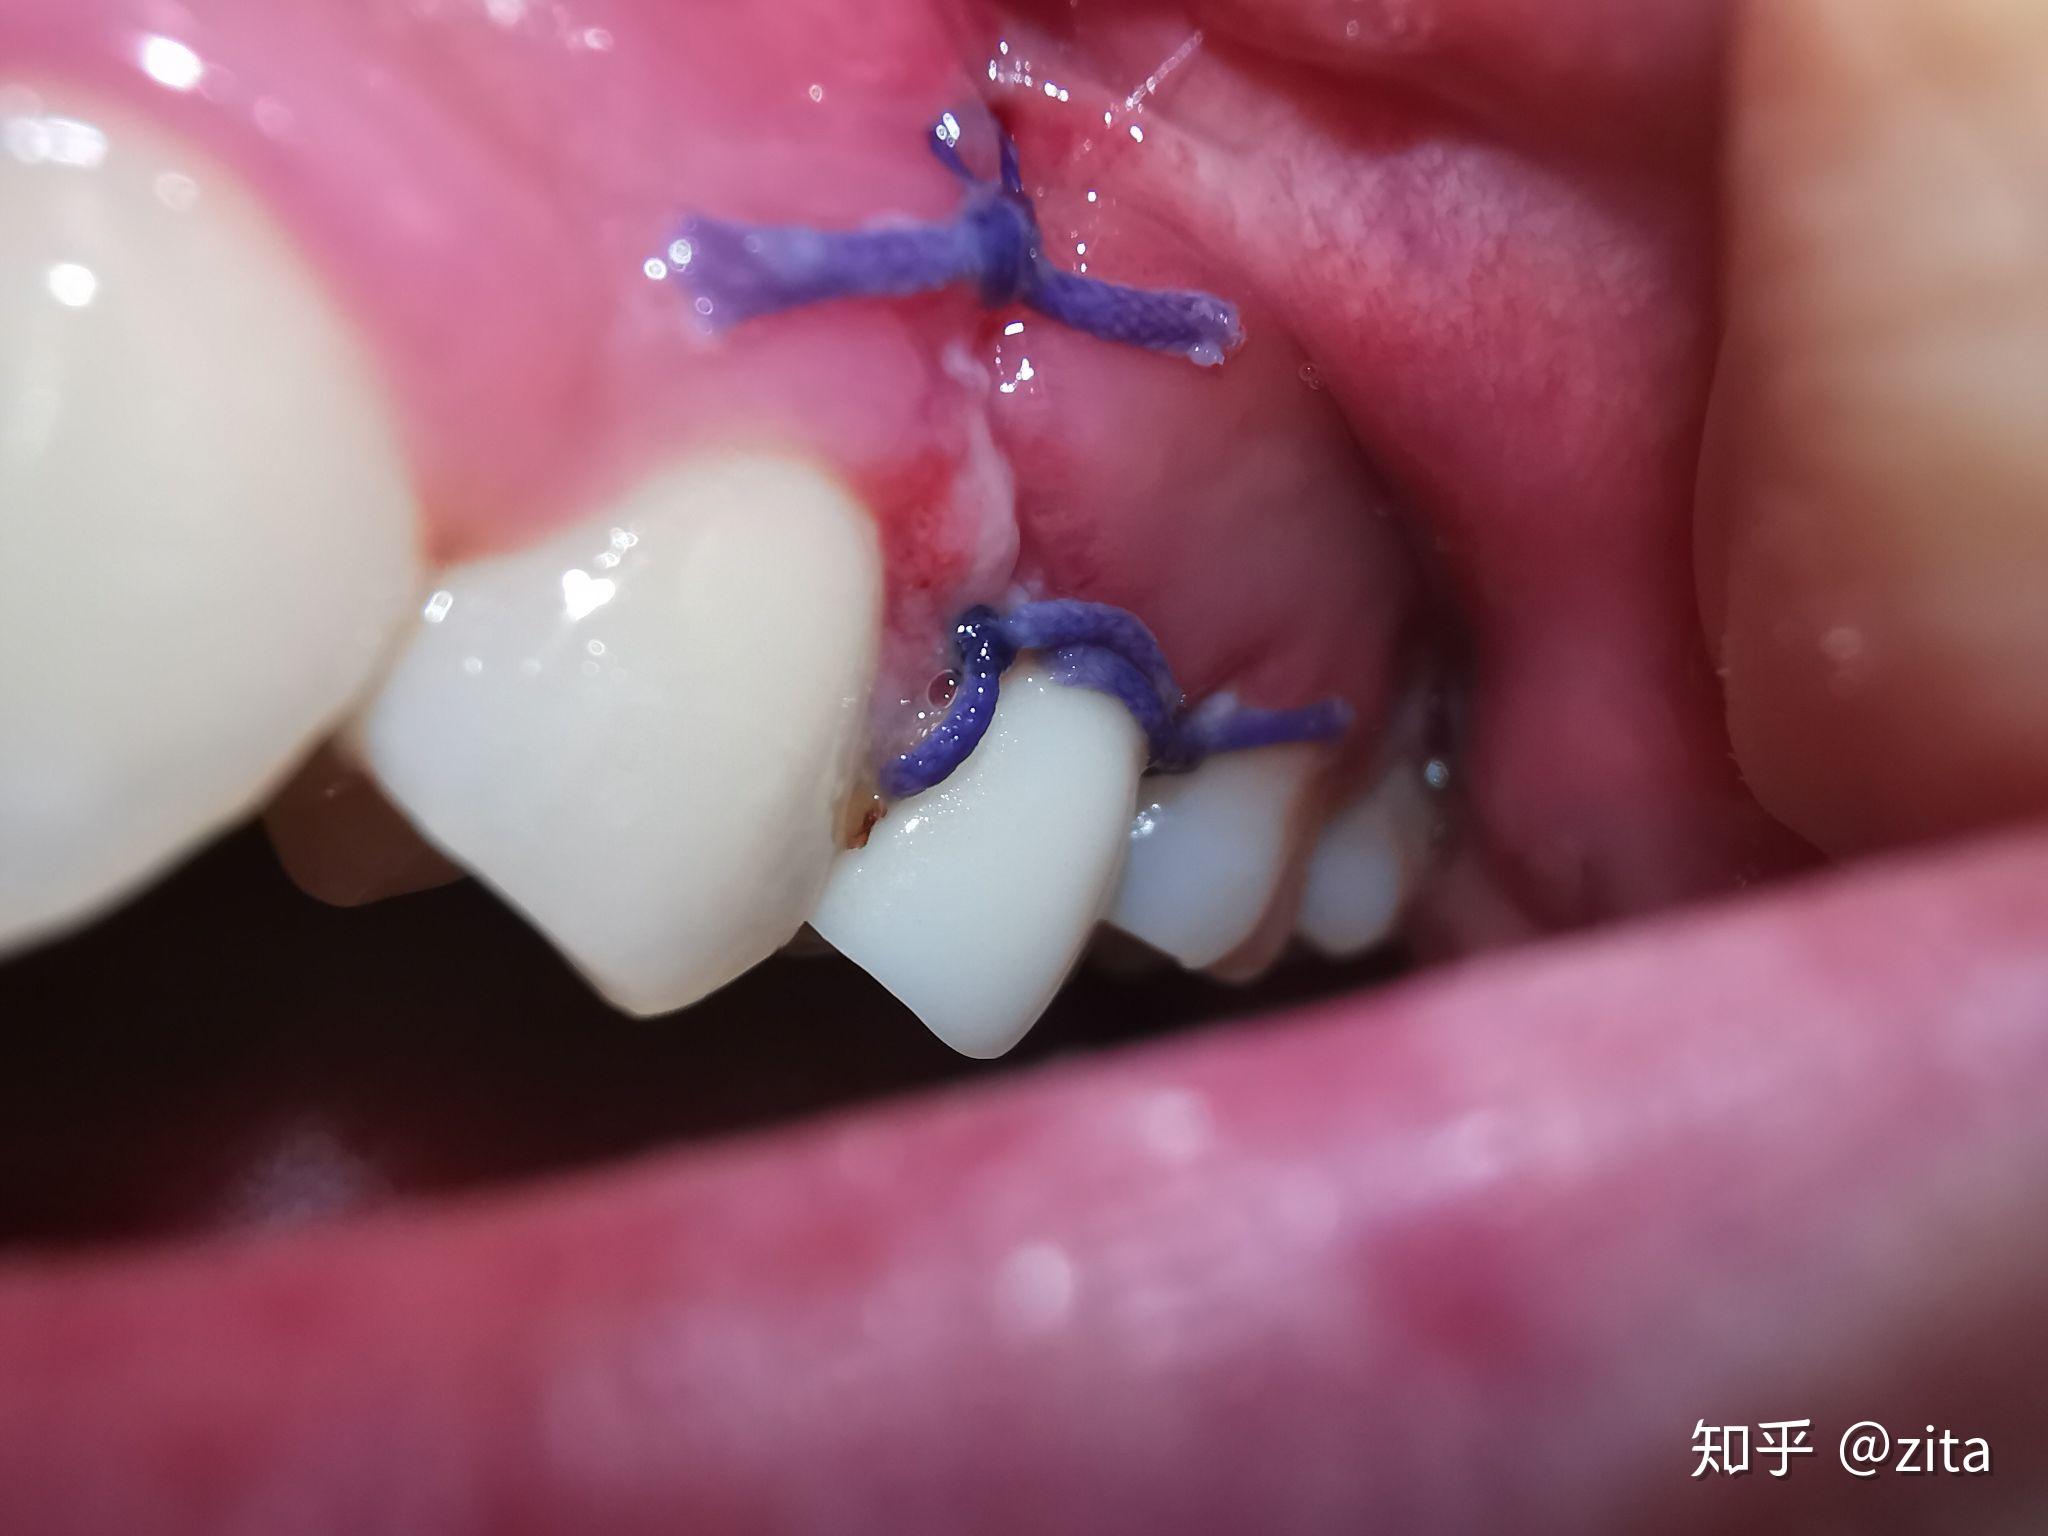 牙根管系统详解 - 口腔医学 - 天山医学院